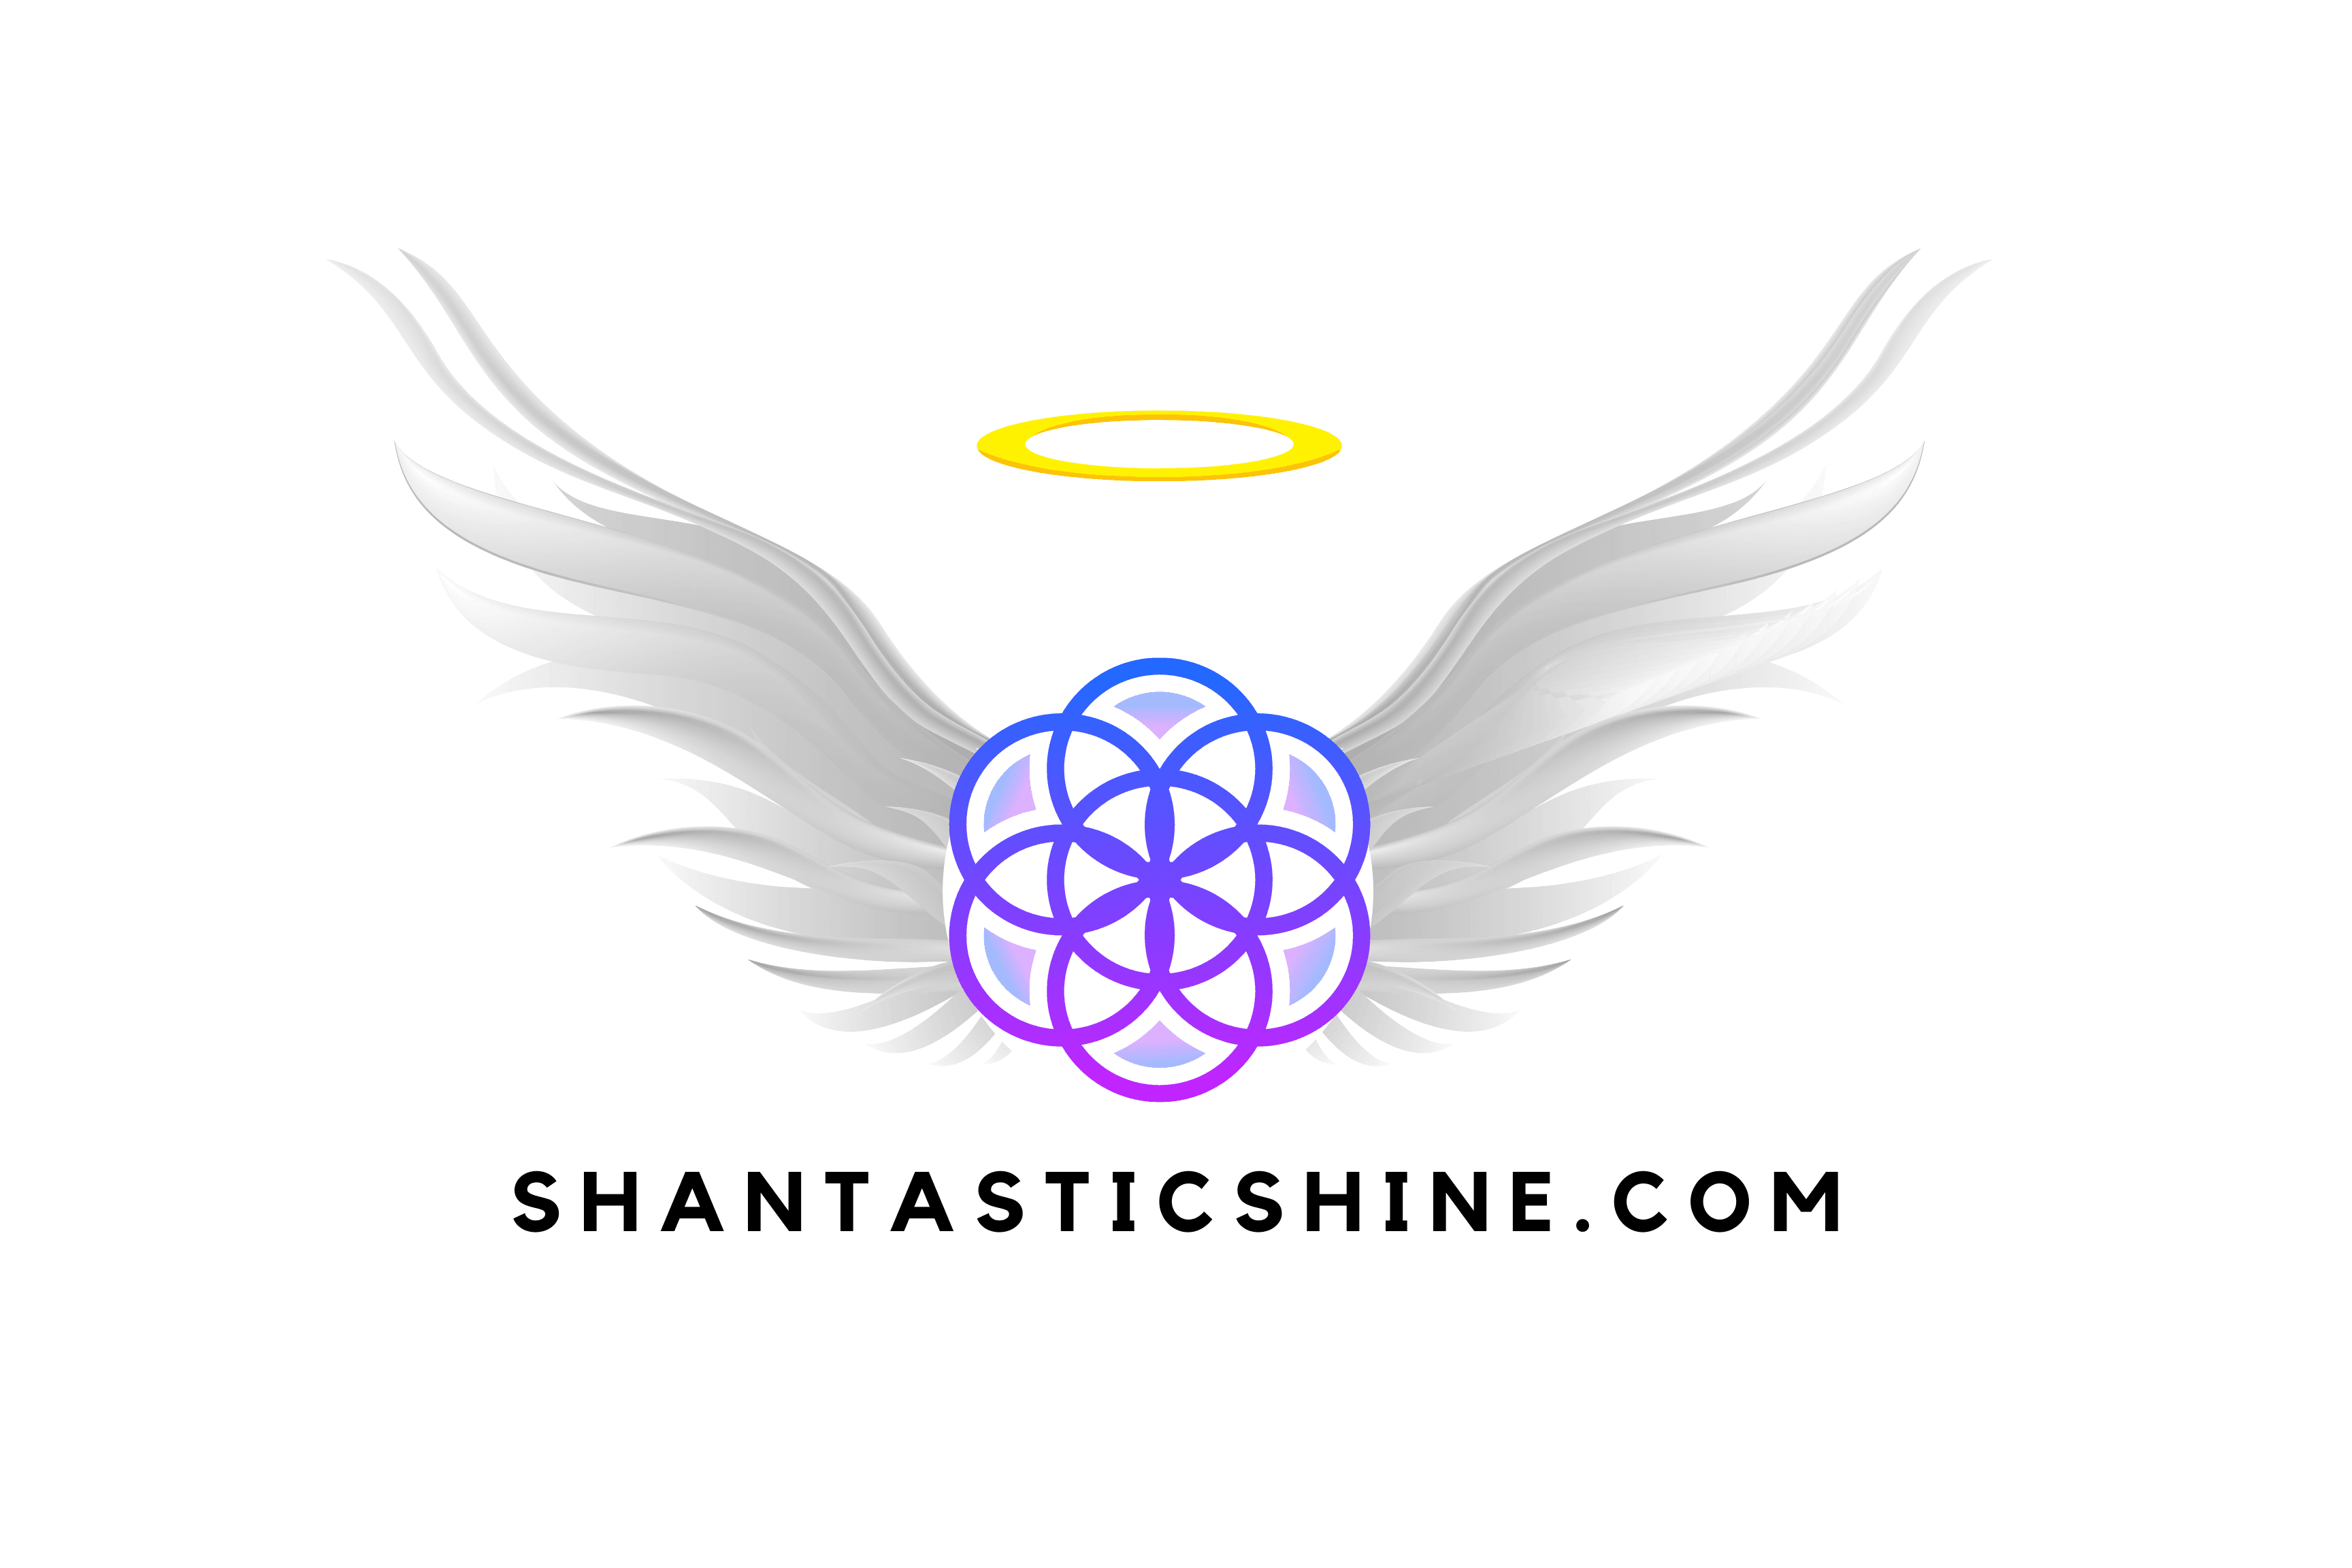 ShantasticShine